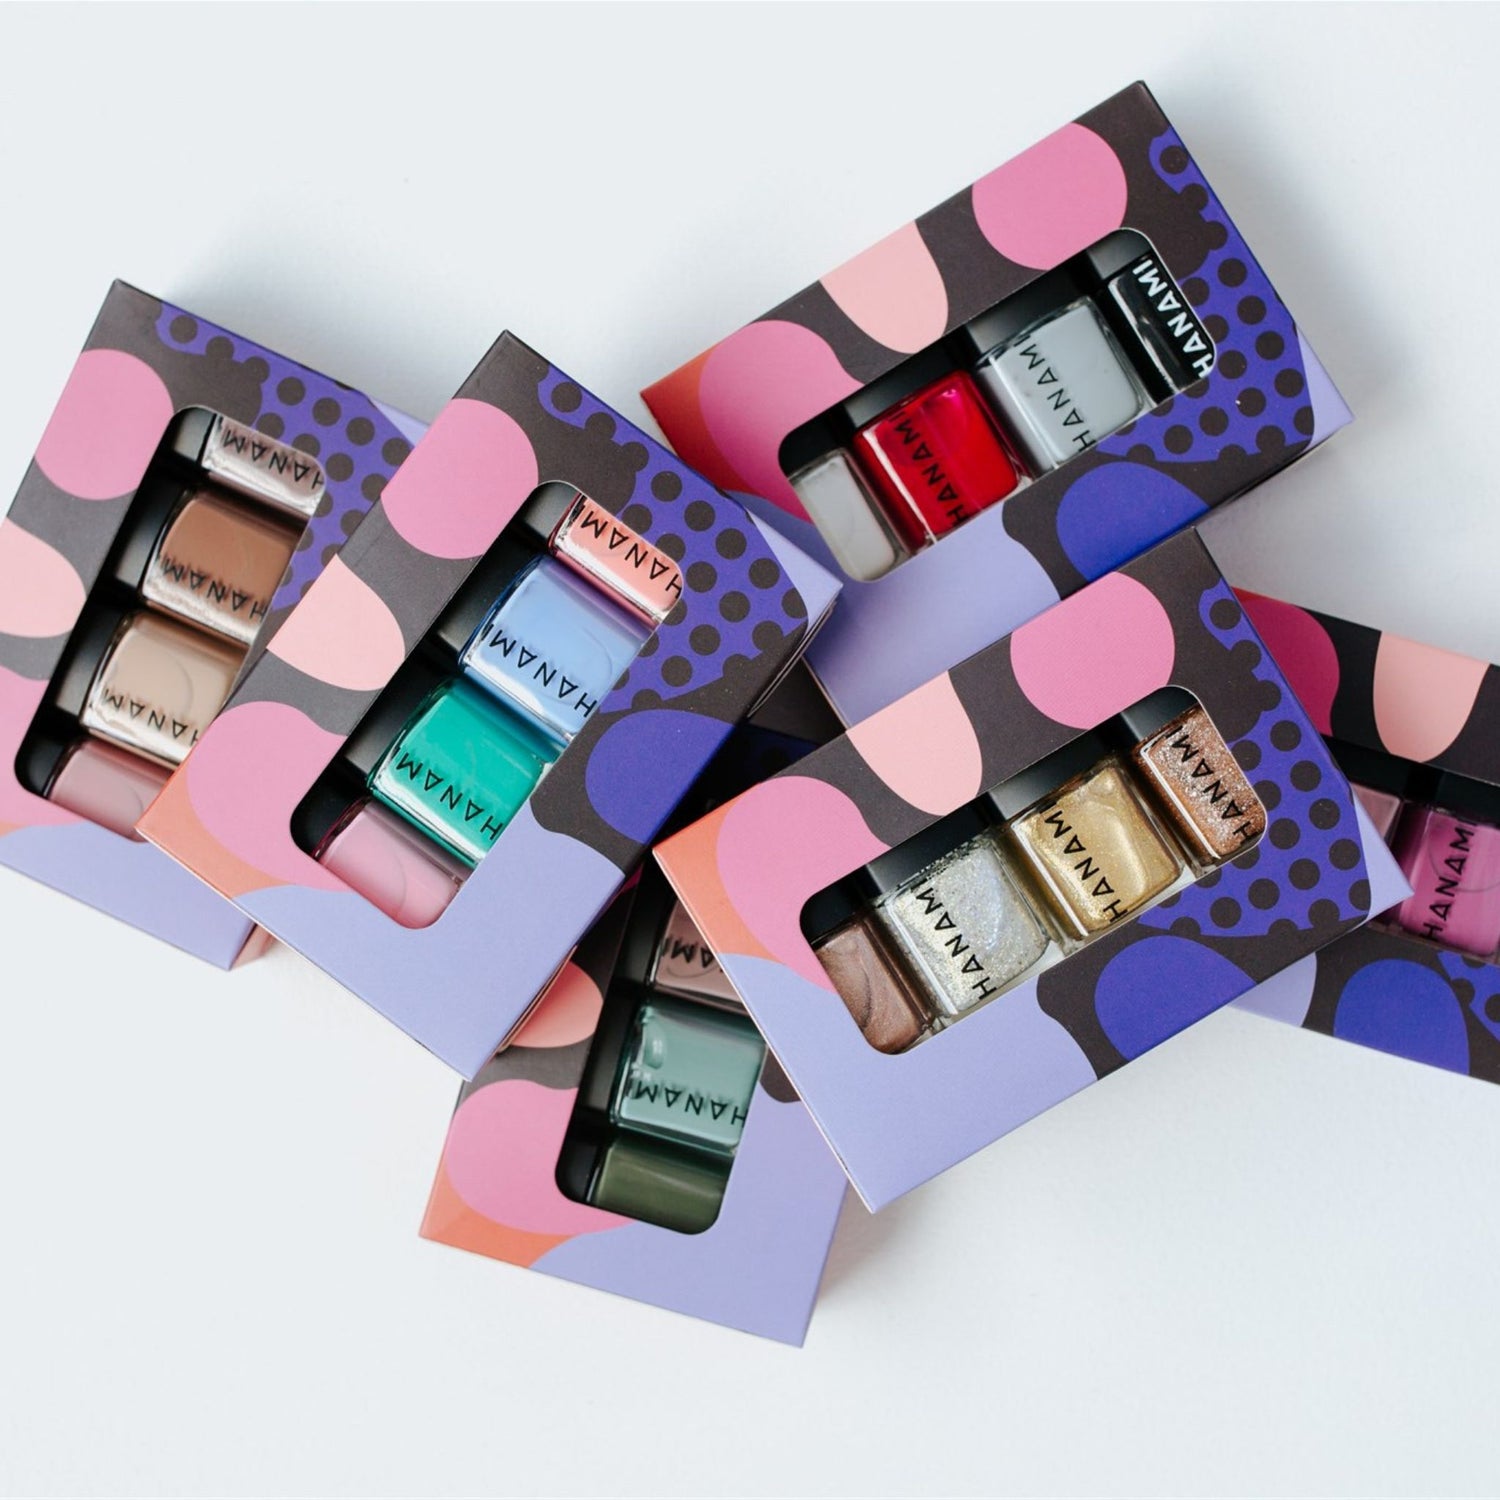 Selection of Hanami mini nail polish gift boxes